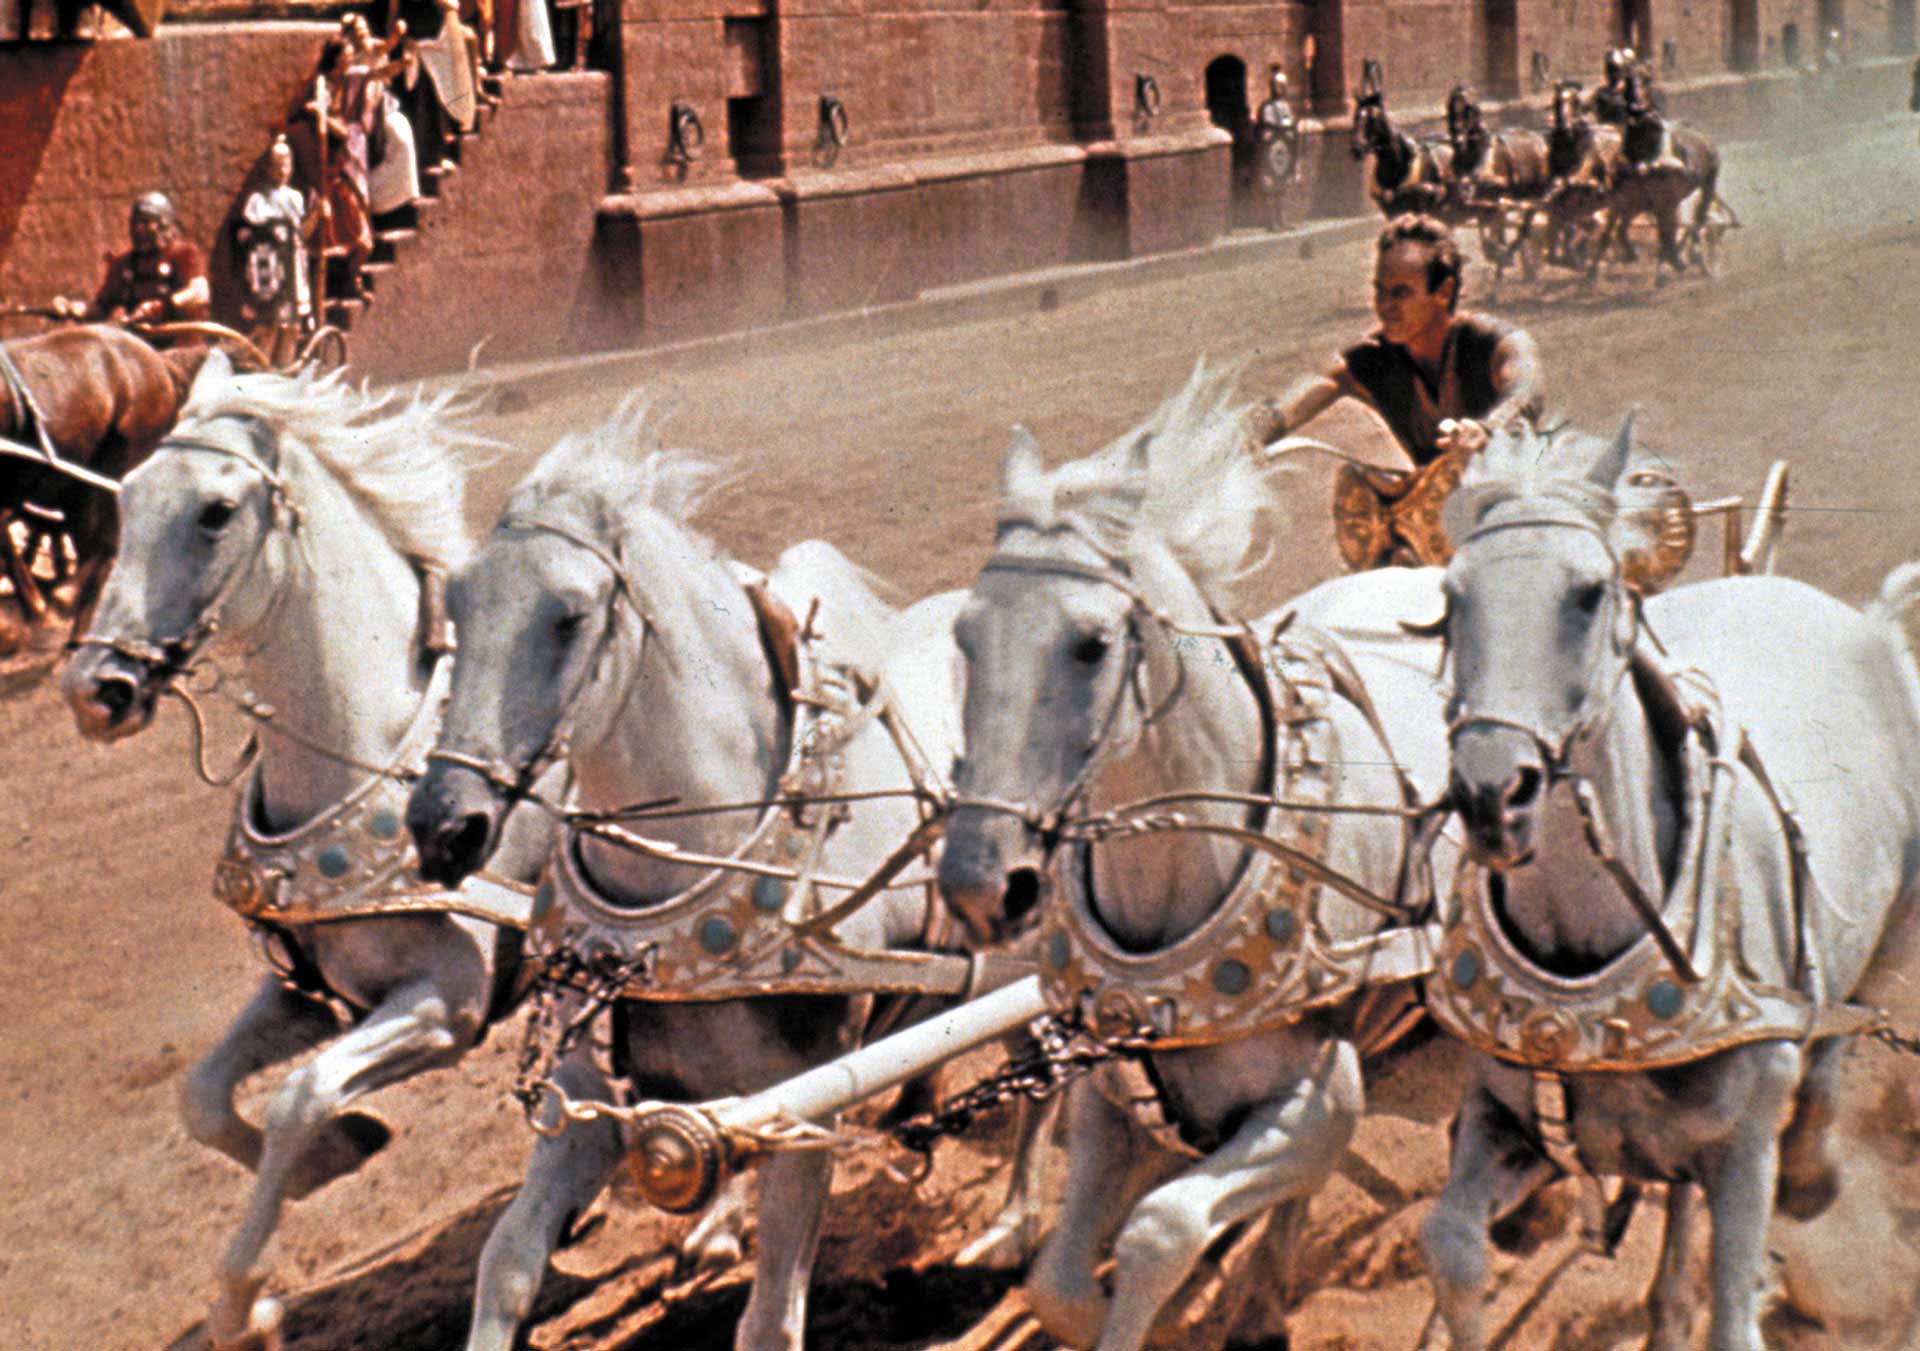 فیلم Ben-Hur سال ۱۹۵۹ میلادی و اسب ها در حال دویدن با نهایت سرعت